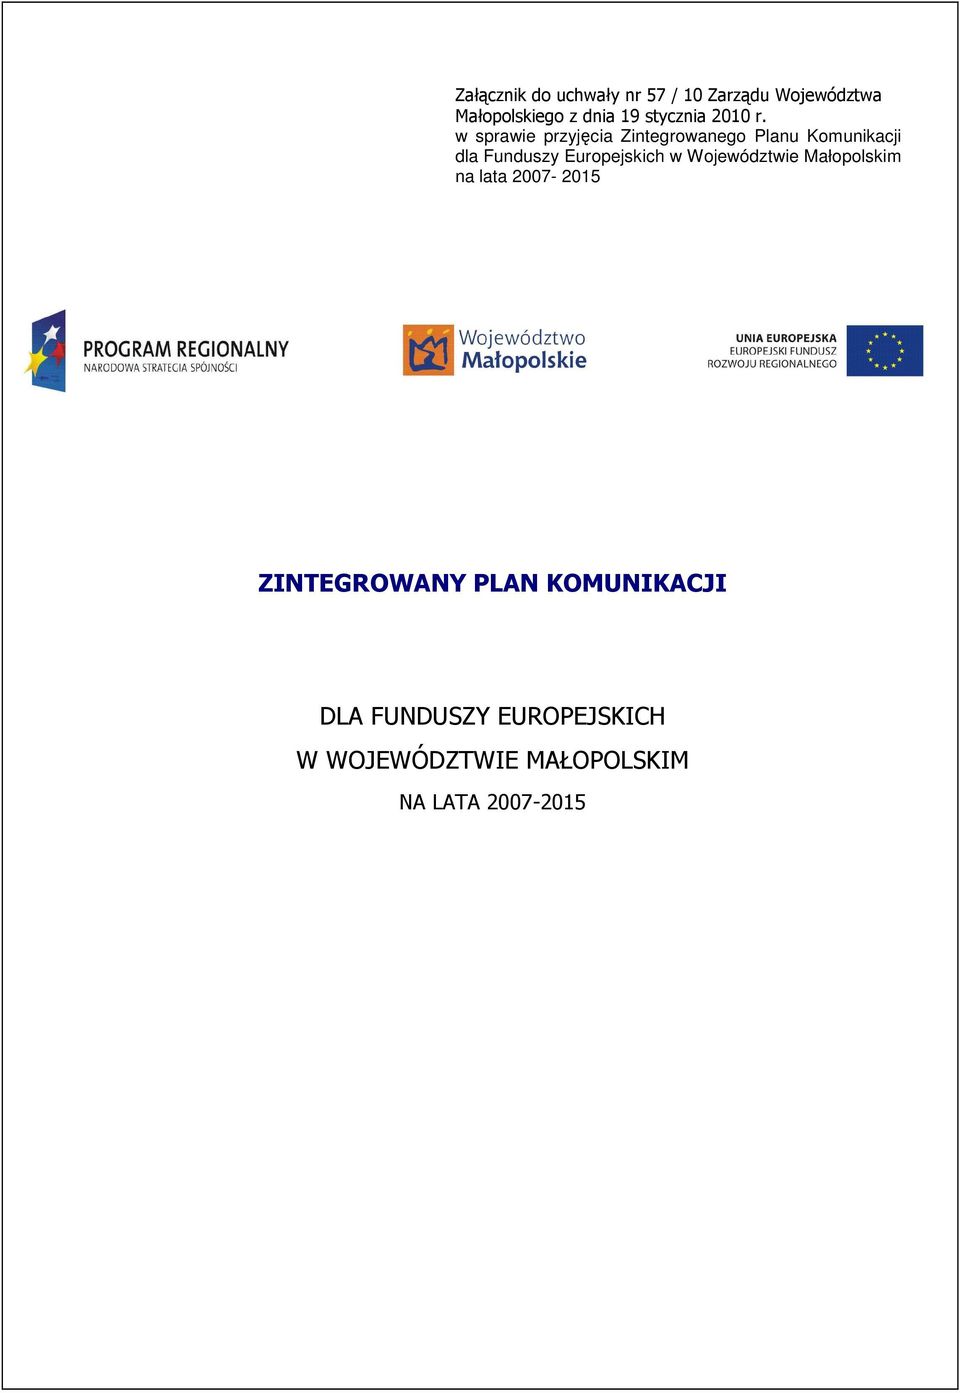 w sprawie przyjęcia Zintegrowanego Planu Komunikacji dla Funduszy Europejskich